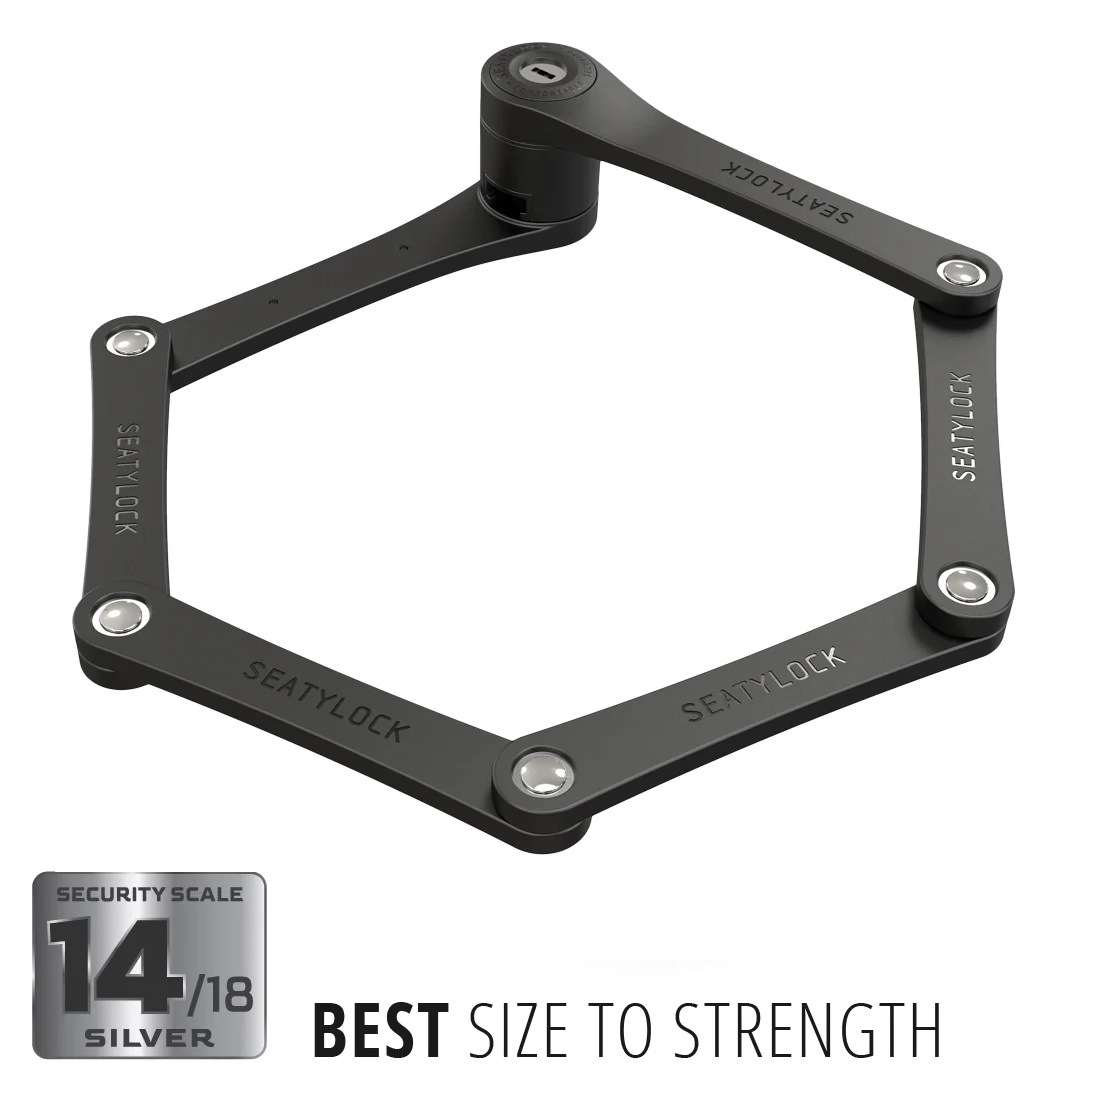 ABUS Bordo 6055/60 Folding Bike Lock in black color